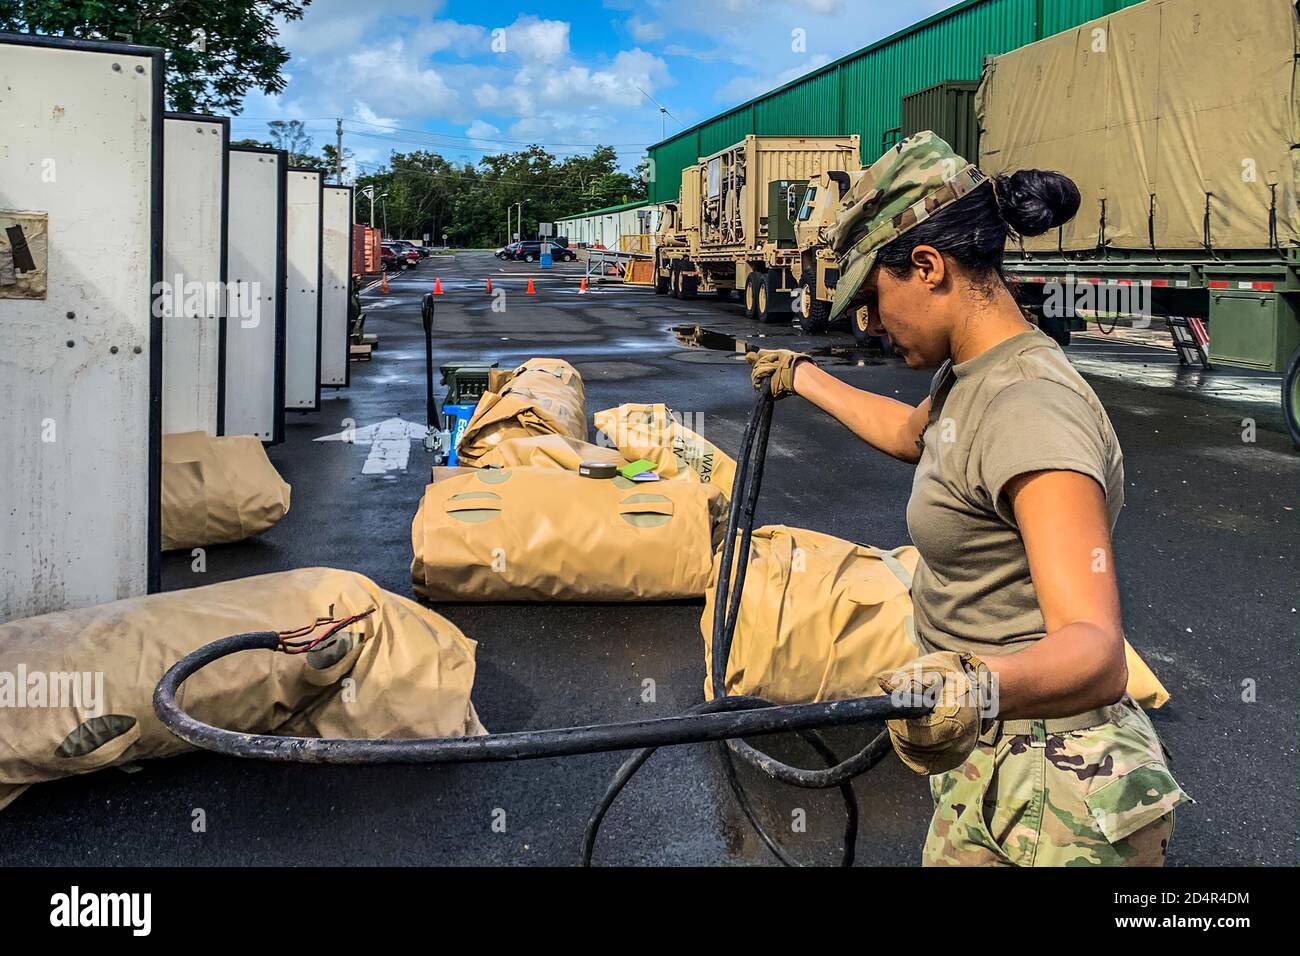 Soldati della 430th Quartermaster Company, U.S. Army Reserve comando geografico multifunzionale per i Caraibi, stanno avanzando con le ispezioni e i controlli, 12 gennaio, in preparazione di un'eventuale attivazione a sostegno dei cittadini sfollati nel settore sud-occidentale di Puerto Rico, a seguito dei recenti terremoti nella regione. Foto Stock